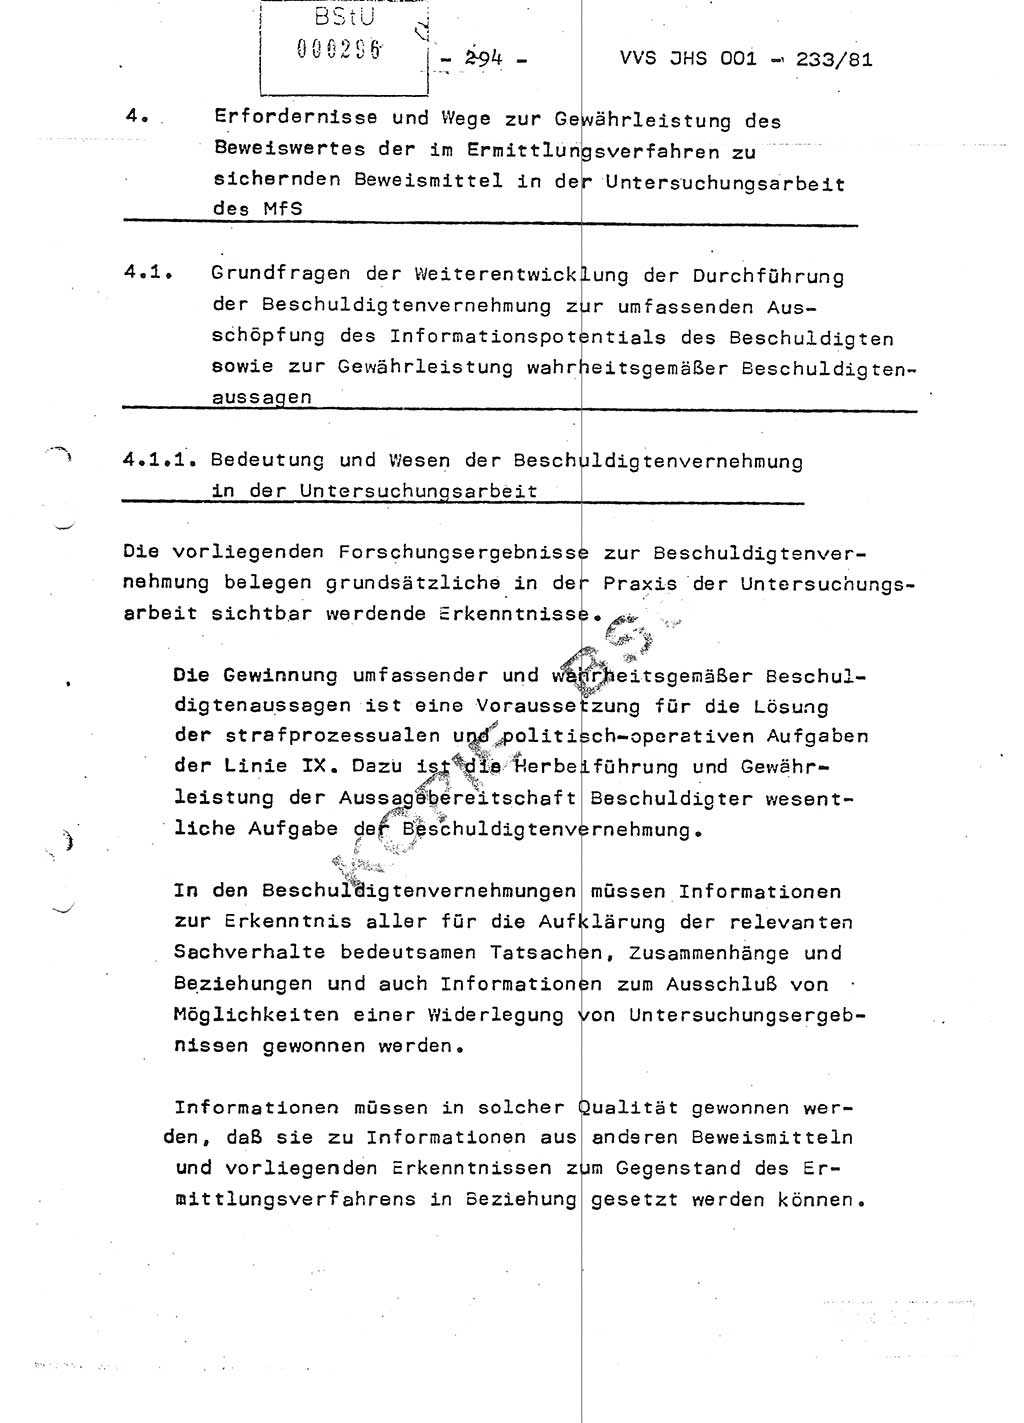 Dissertation Oberstleutnant Horst Zank (JHS), Oberstleutnant Dr. Karl-Heinz Knoblauch (JHS), Oberstleutnant Gustav-Adolf Kowalewski (HA Ⅸ), Oberstleutnant Wolfgang Plötner (HA Ⅸ), Ministerium für Staatssicherheit (MfS) [Deutsche Demokratische Republik (DDR)], Juristische Hochschule (JHS), Vertrauliche Verschlußsache (VVS) o001-233/81, Potsdam 1981, Blatt 294 (Diss. MfS DDR JHS VVS o001-233/81 1981, Bl. 294)